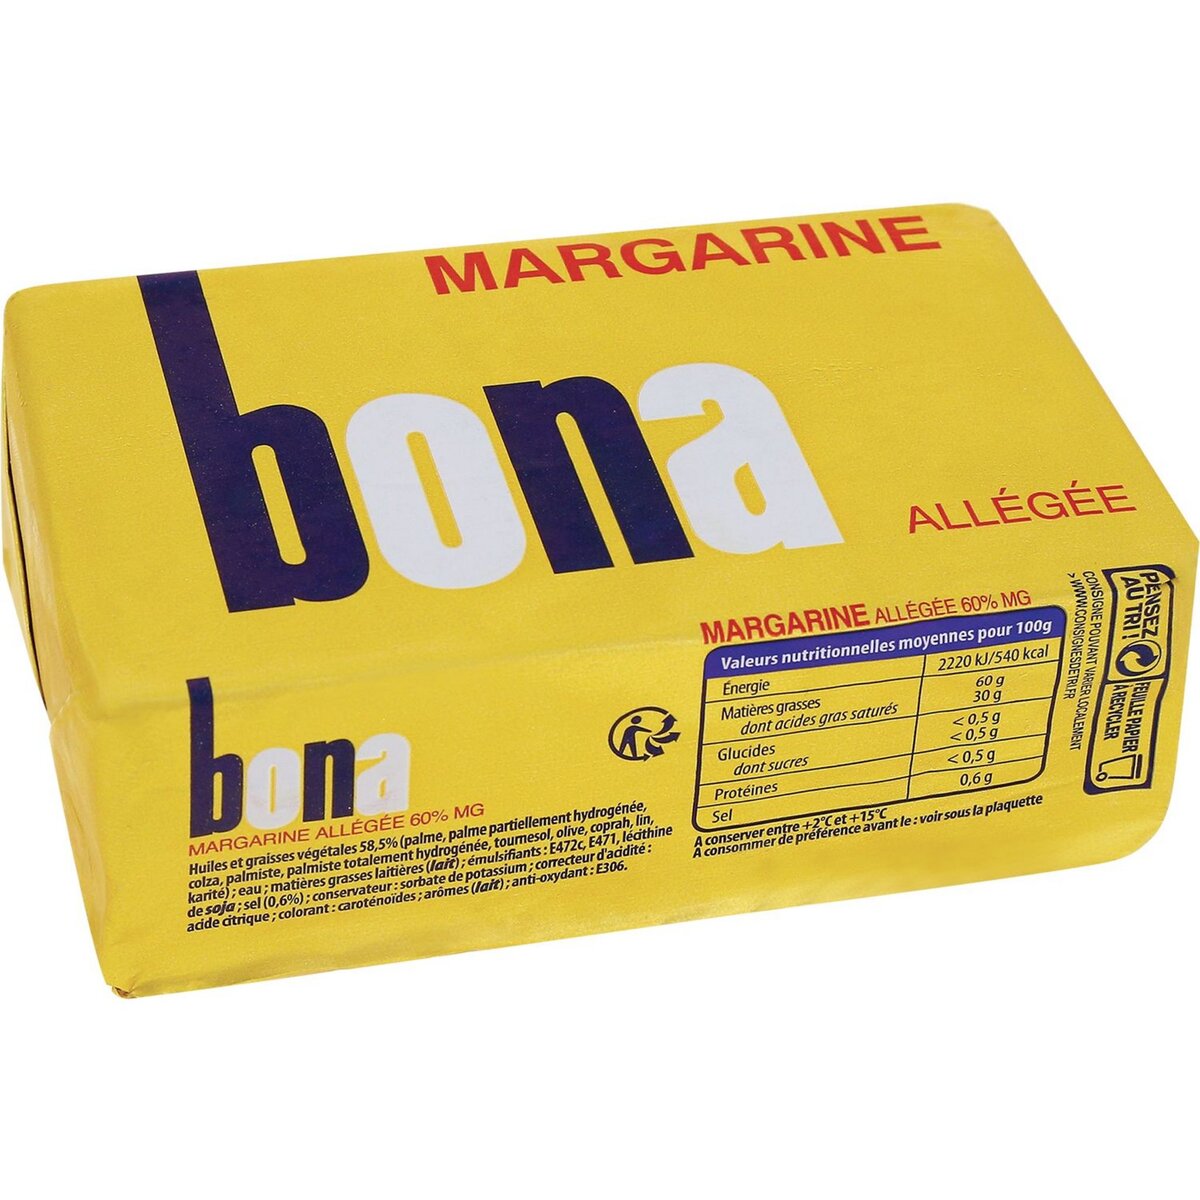 AUCHAN ESSENTIEL Margarine allégée 500g